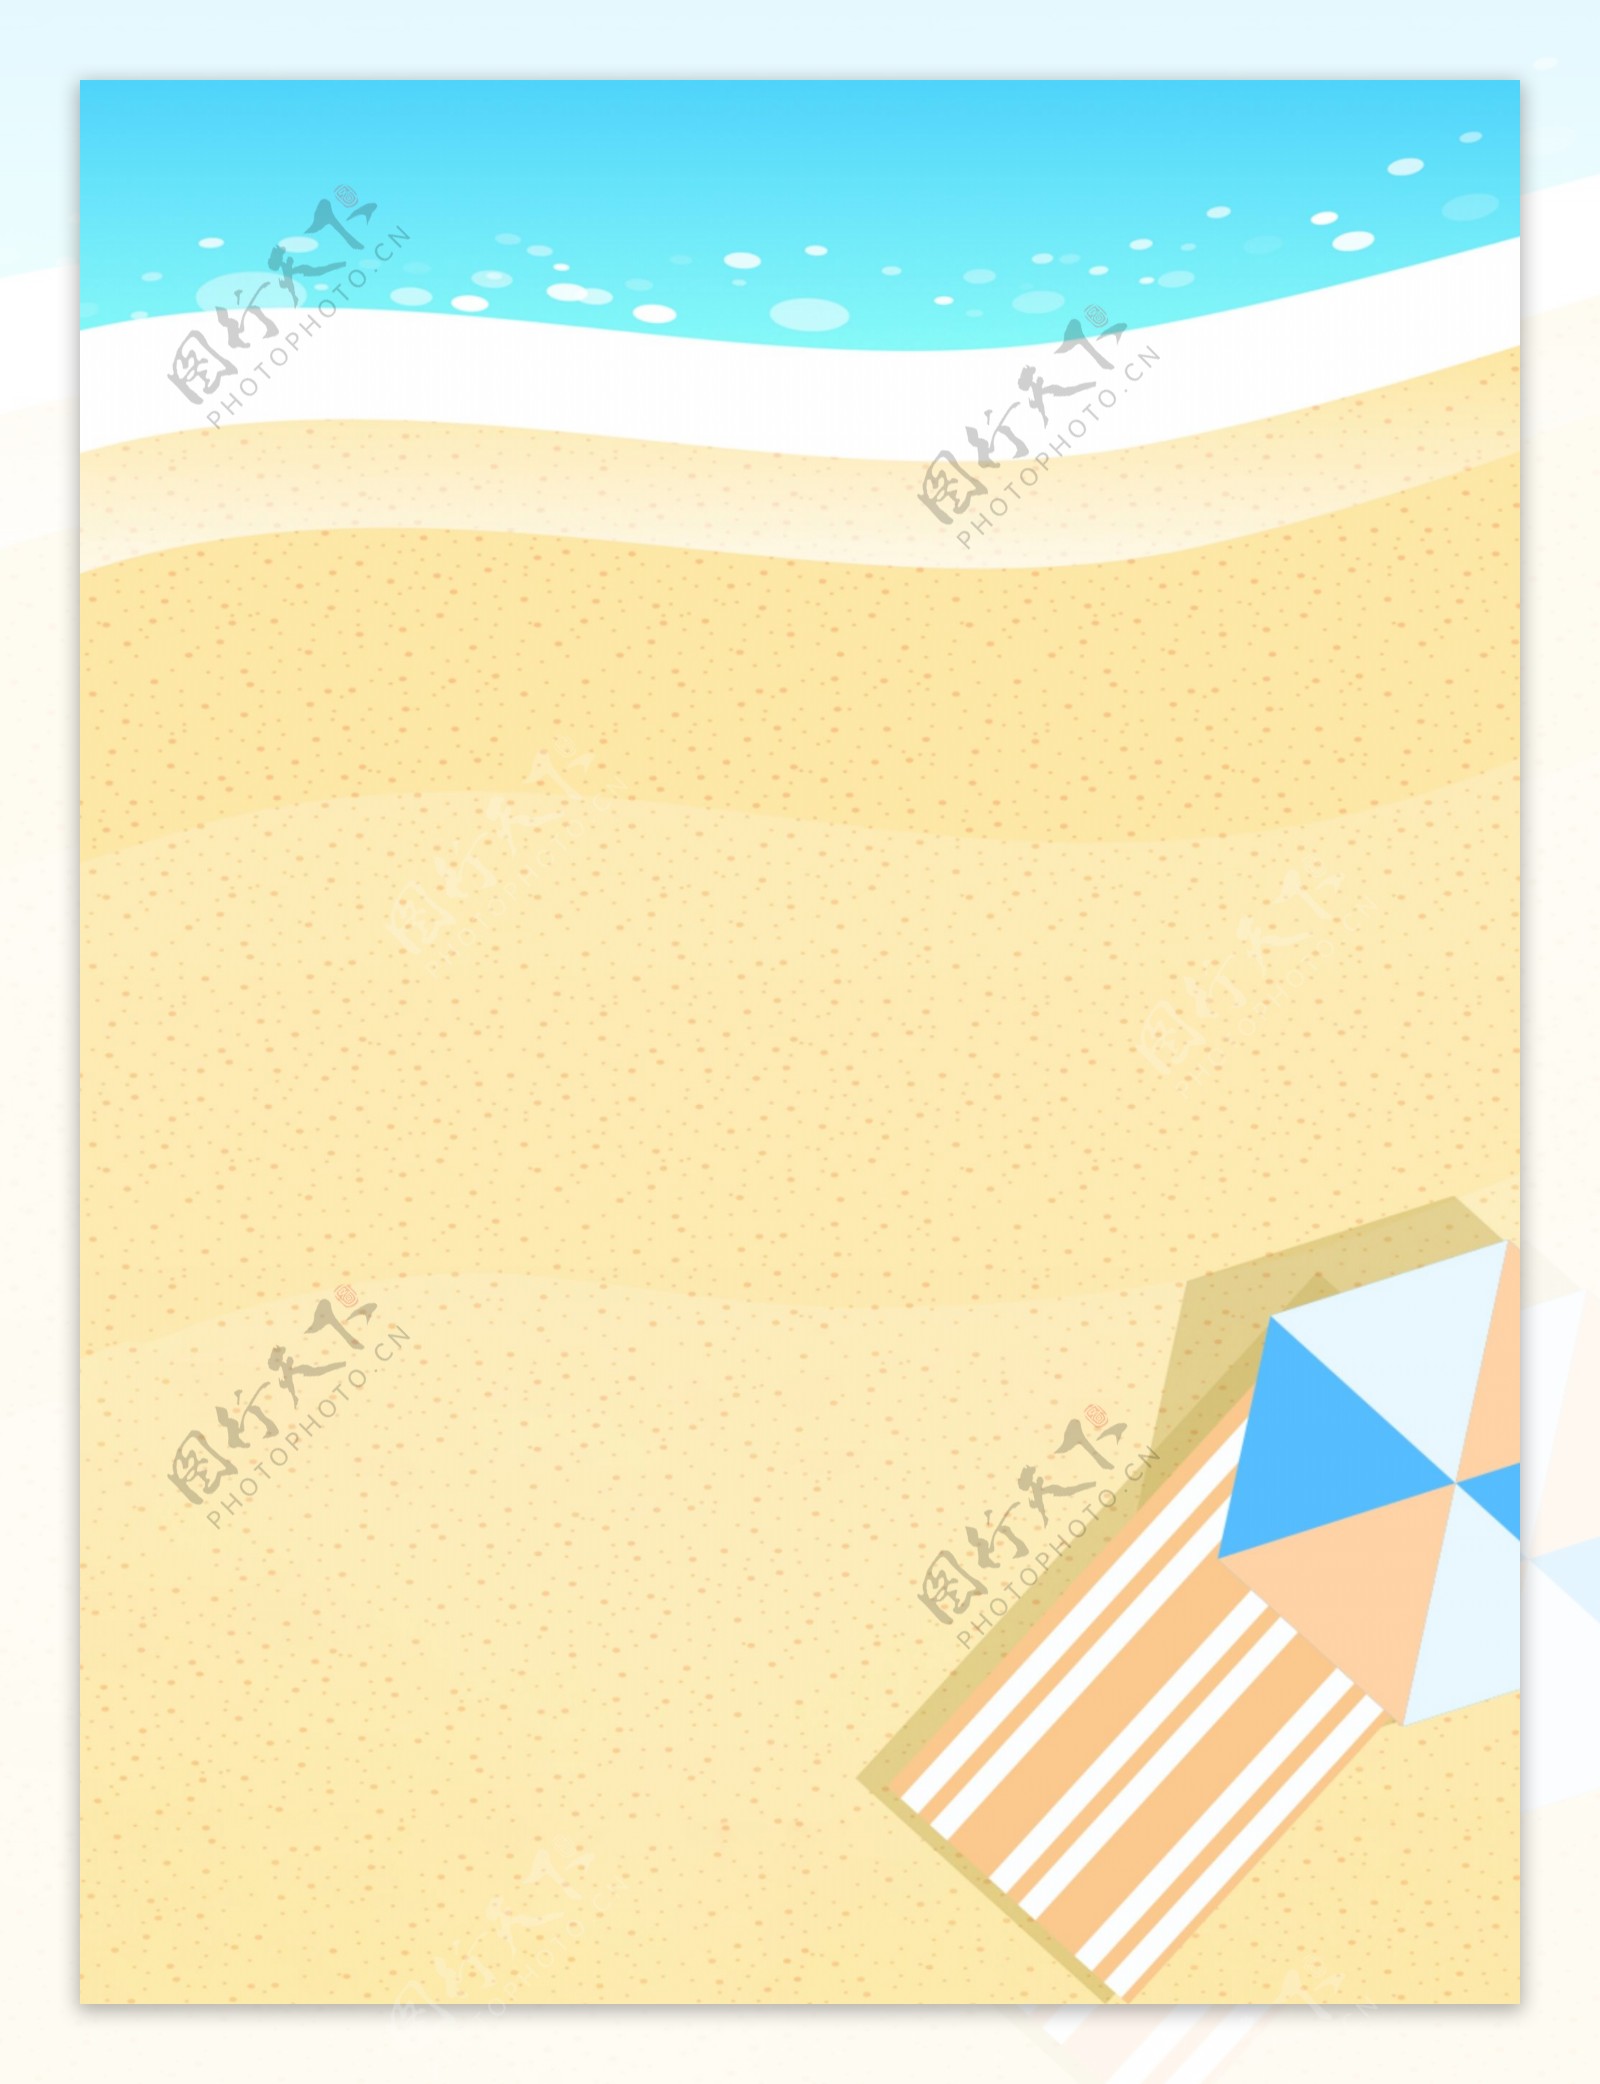 沙滩海边休闲度假夏日背景图